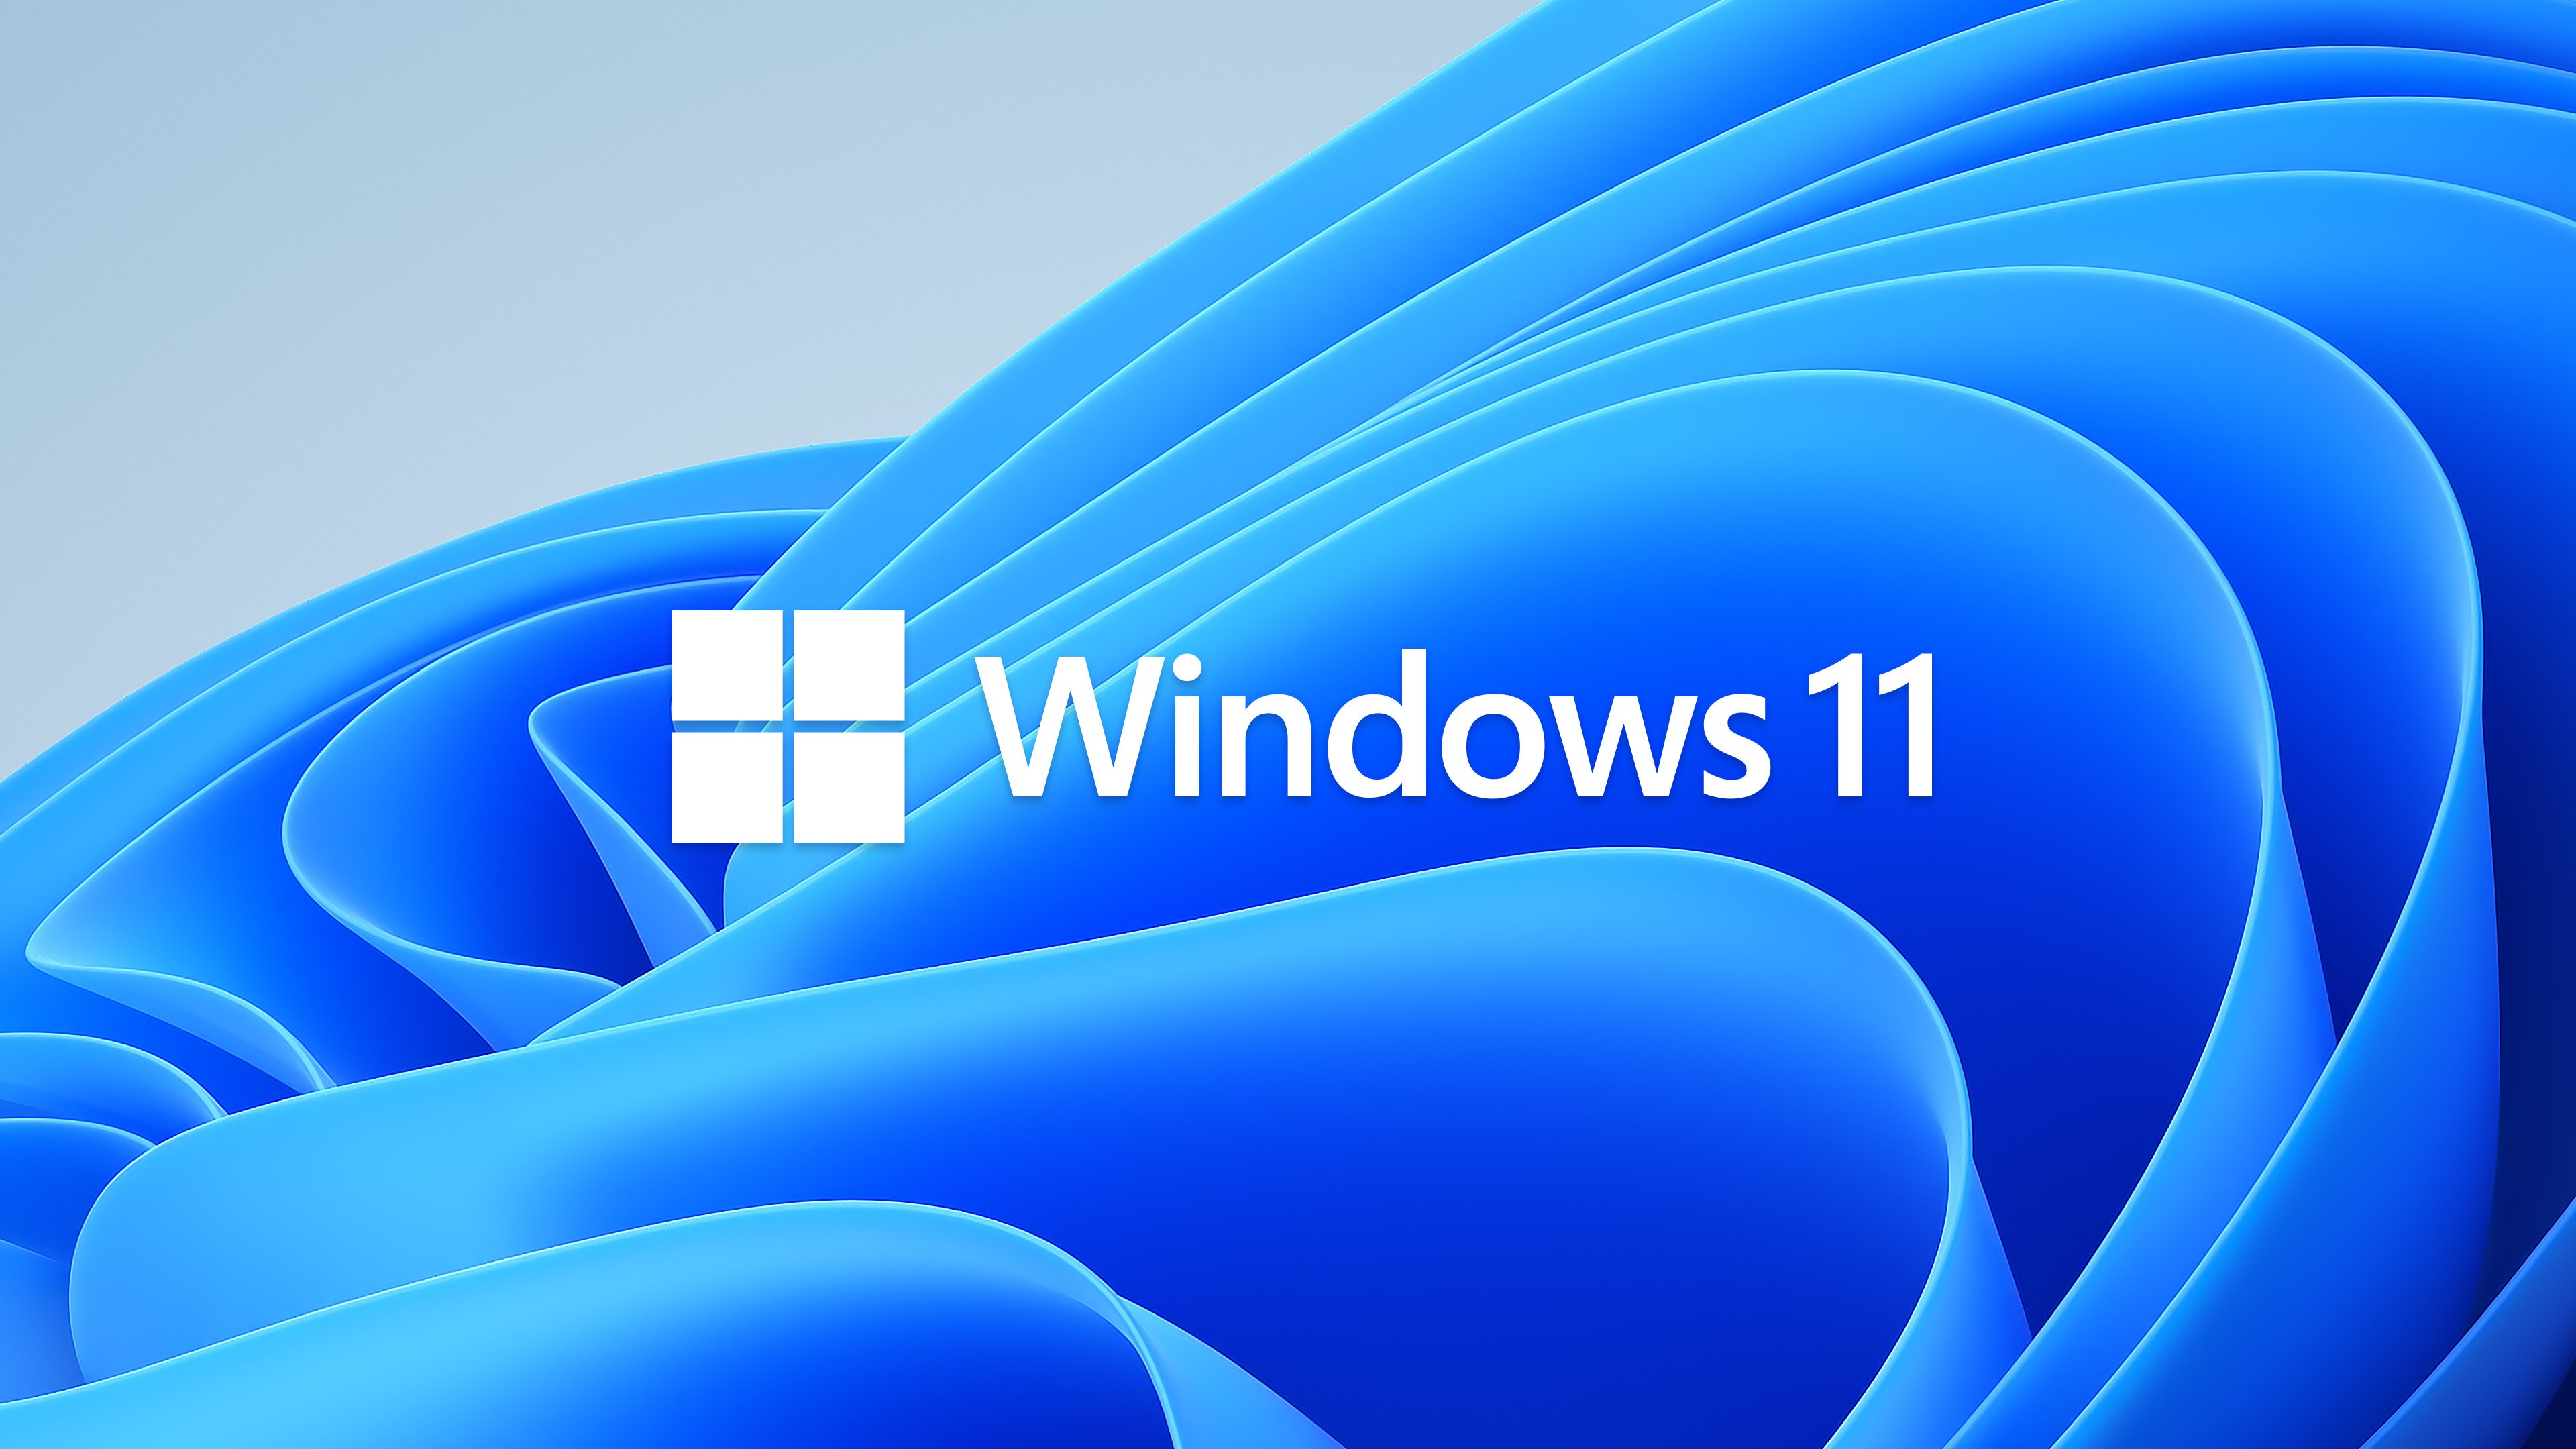 Usuários do Windows 10 poderão migrar gratuitamente para nova versão, que deve ser lançada em outubro. (Microsoft/Reprodução)